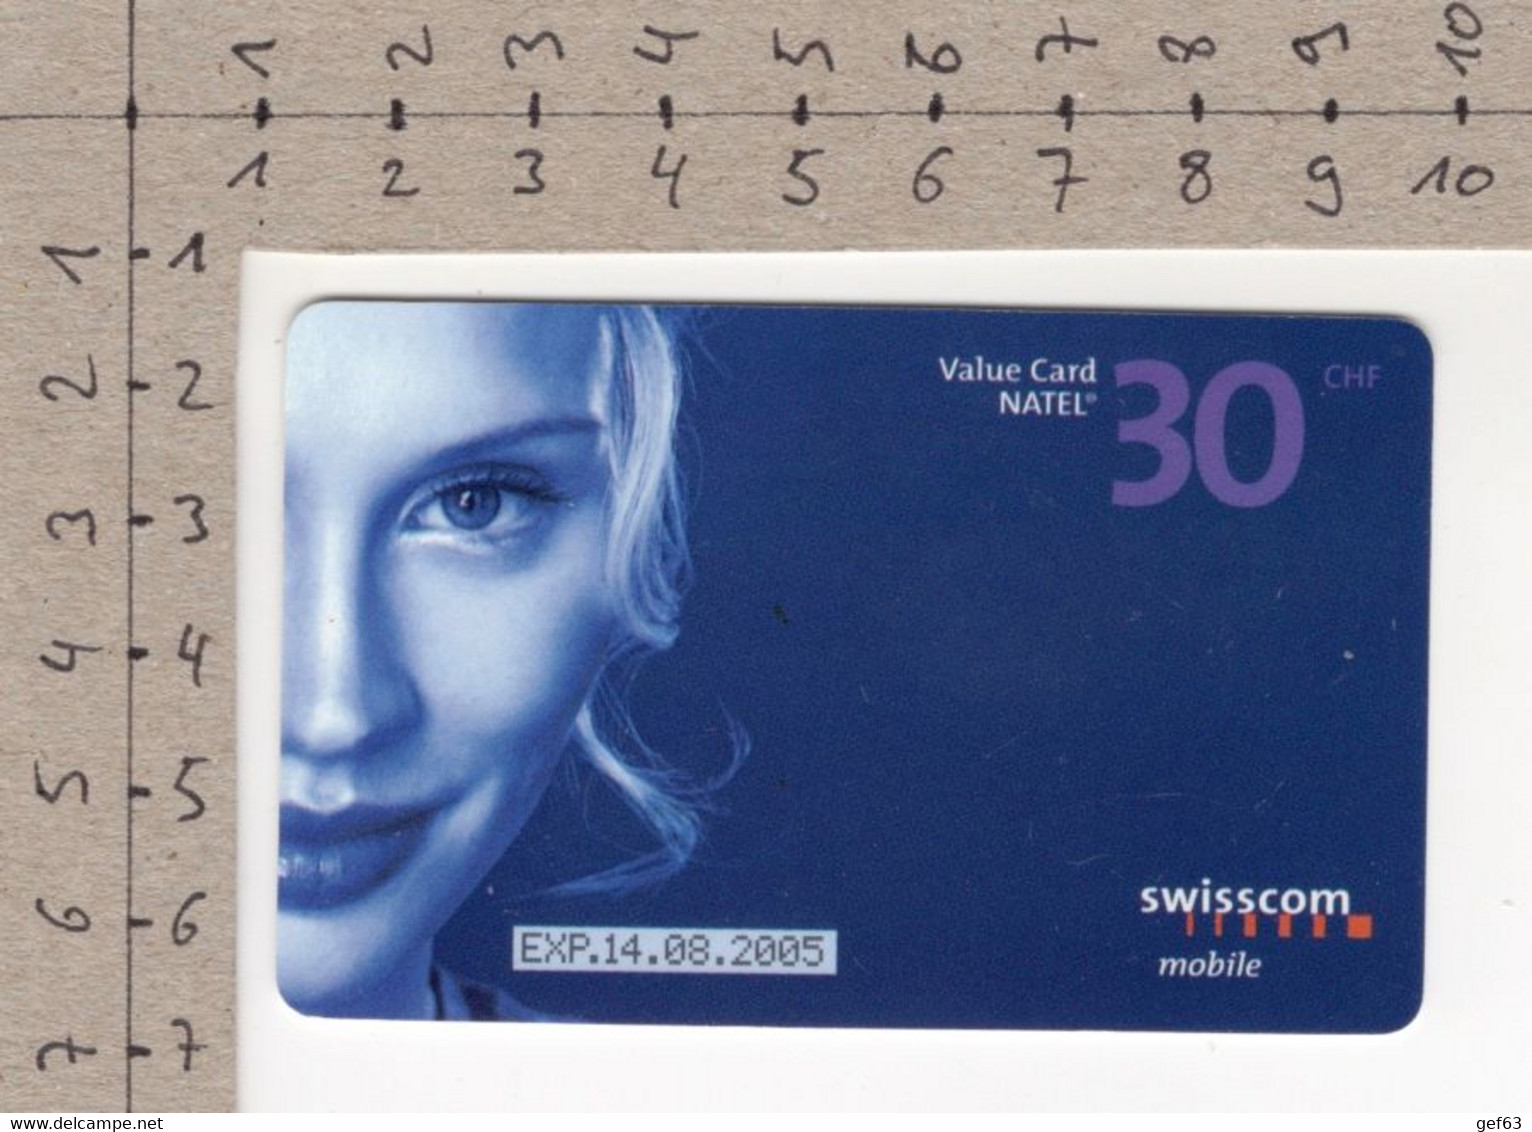 Value Card Natel Easy CHF 30.-- / SWISSCOM Mobile - Telekom-Betreiber